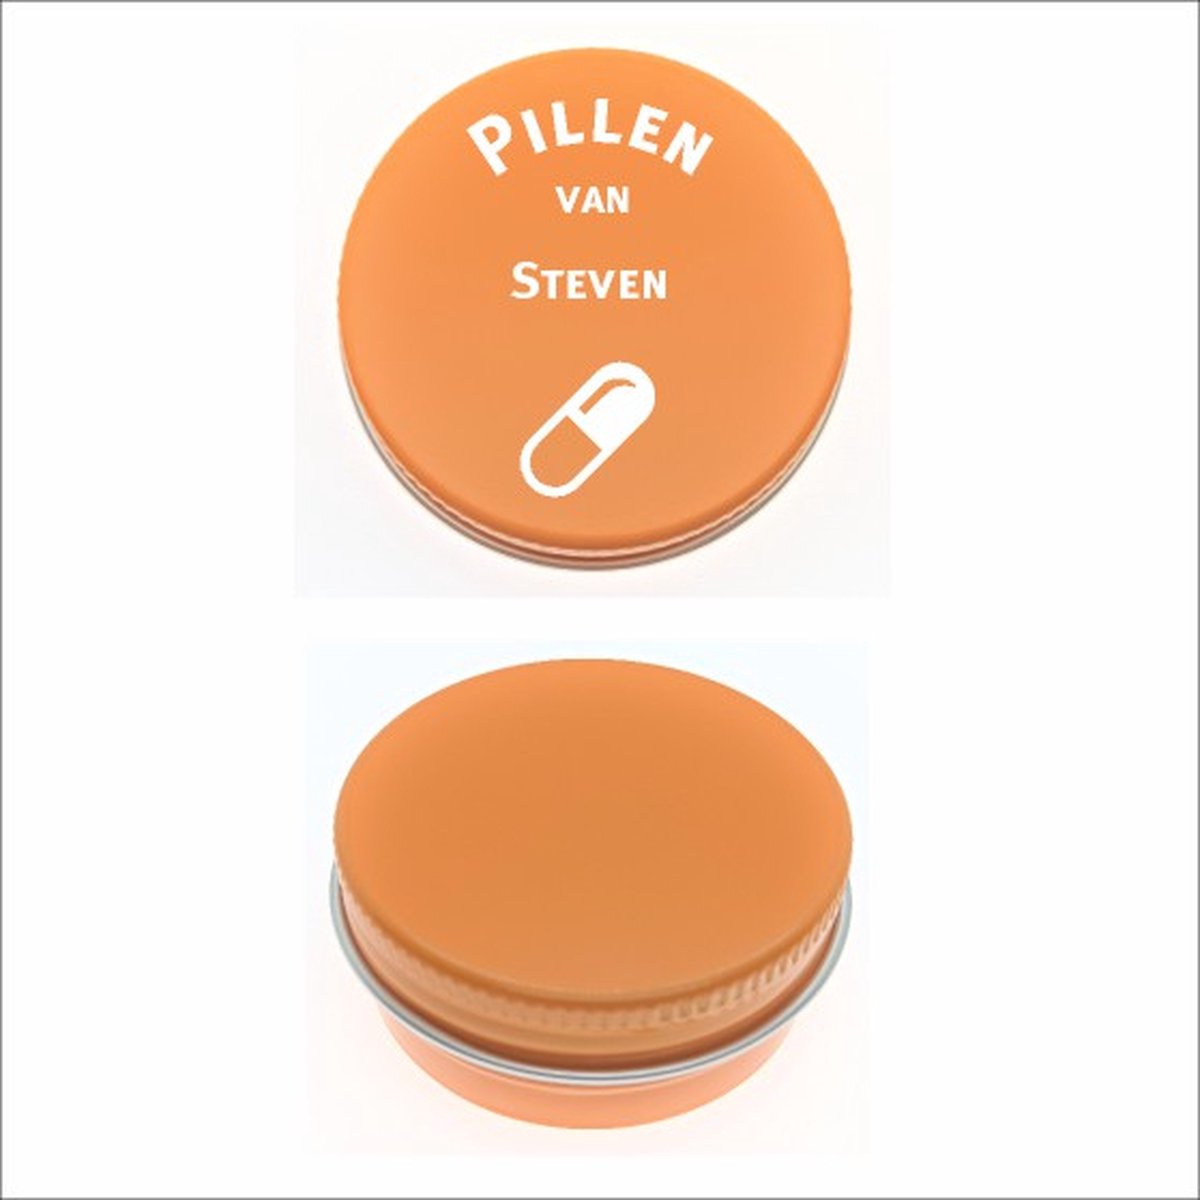 Pillen Blikje Met Naam Gravering - Steven